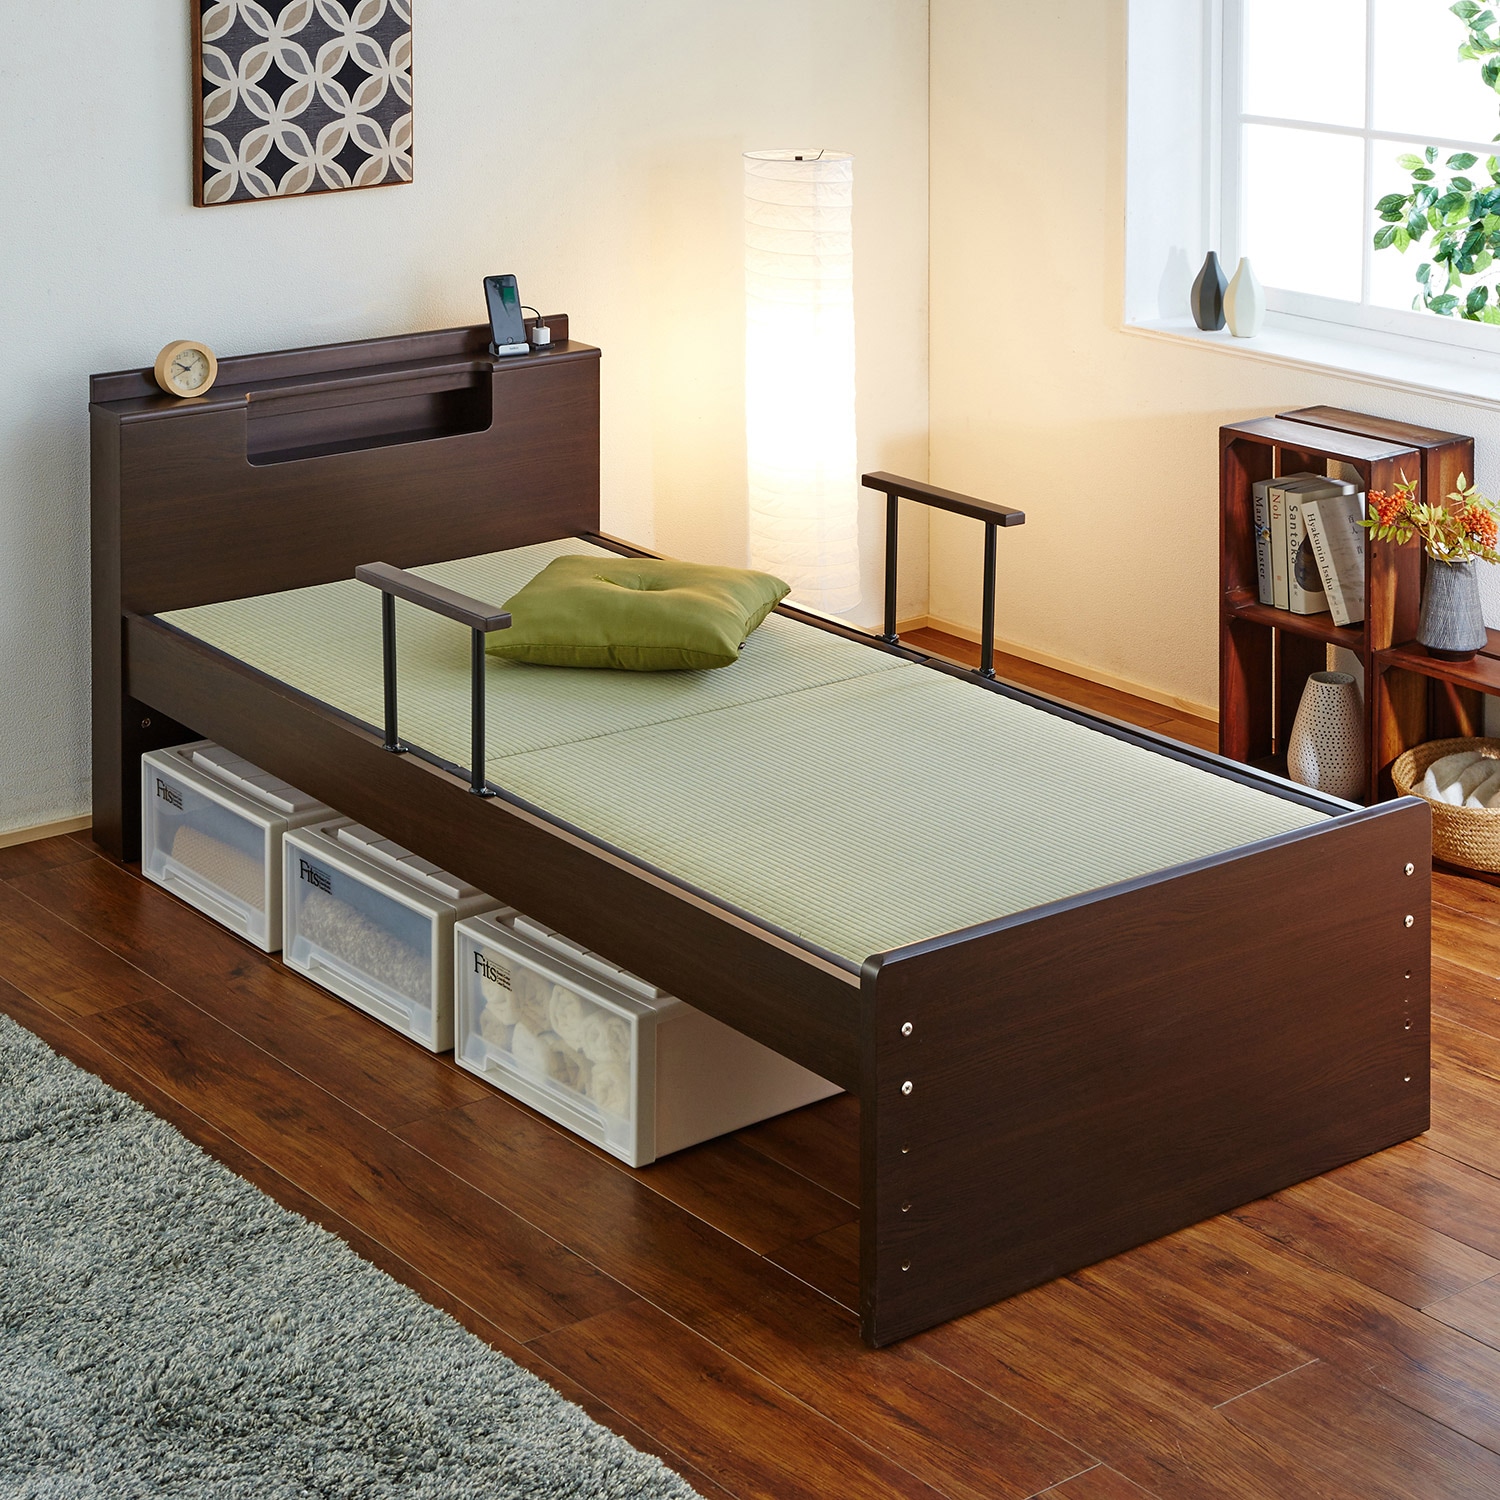 畳ベッド シングルベッド 日本製 たたみ付 手すり付 高さ 調節重量約53kg